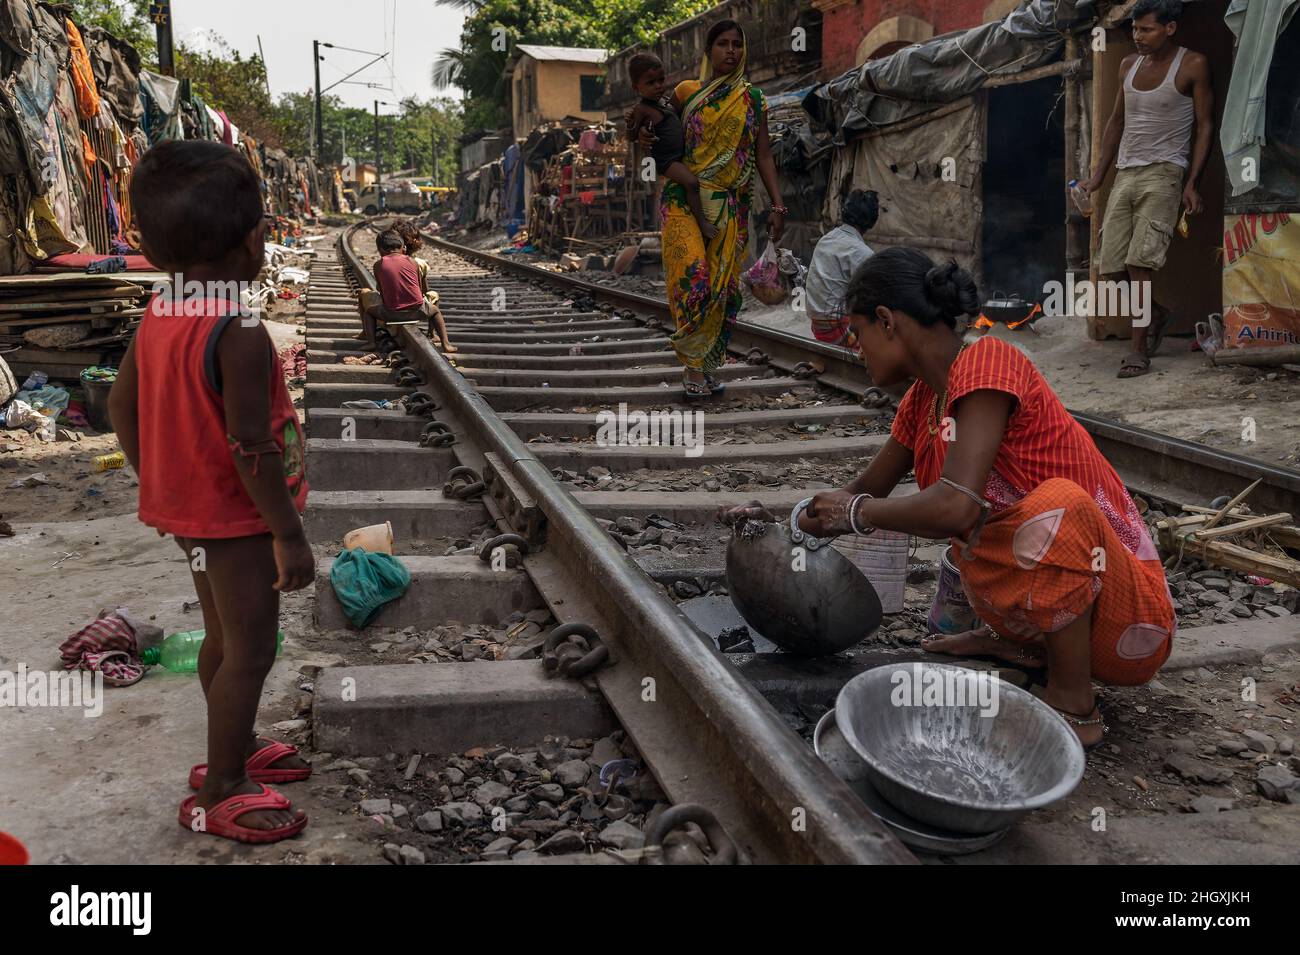 Dalit (untouchables) people of the Crematory's slum, near the railroad, in Kolkata (Calcutta), India Stock Photo